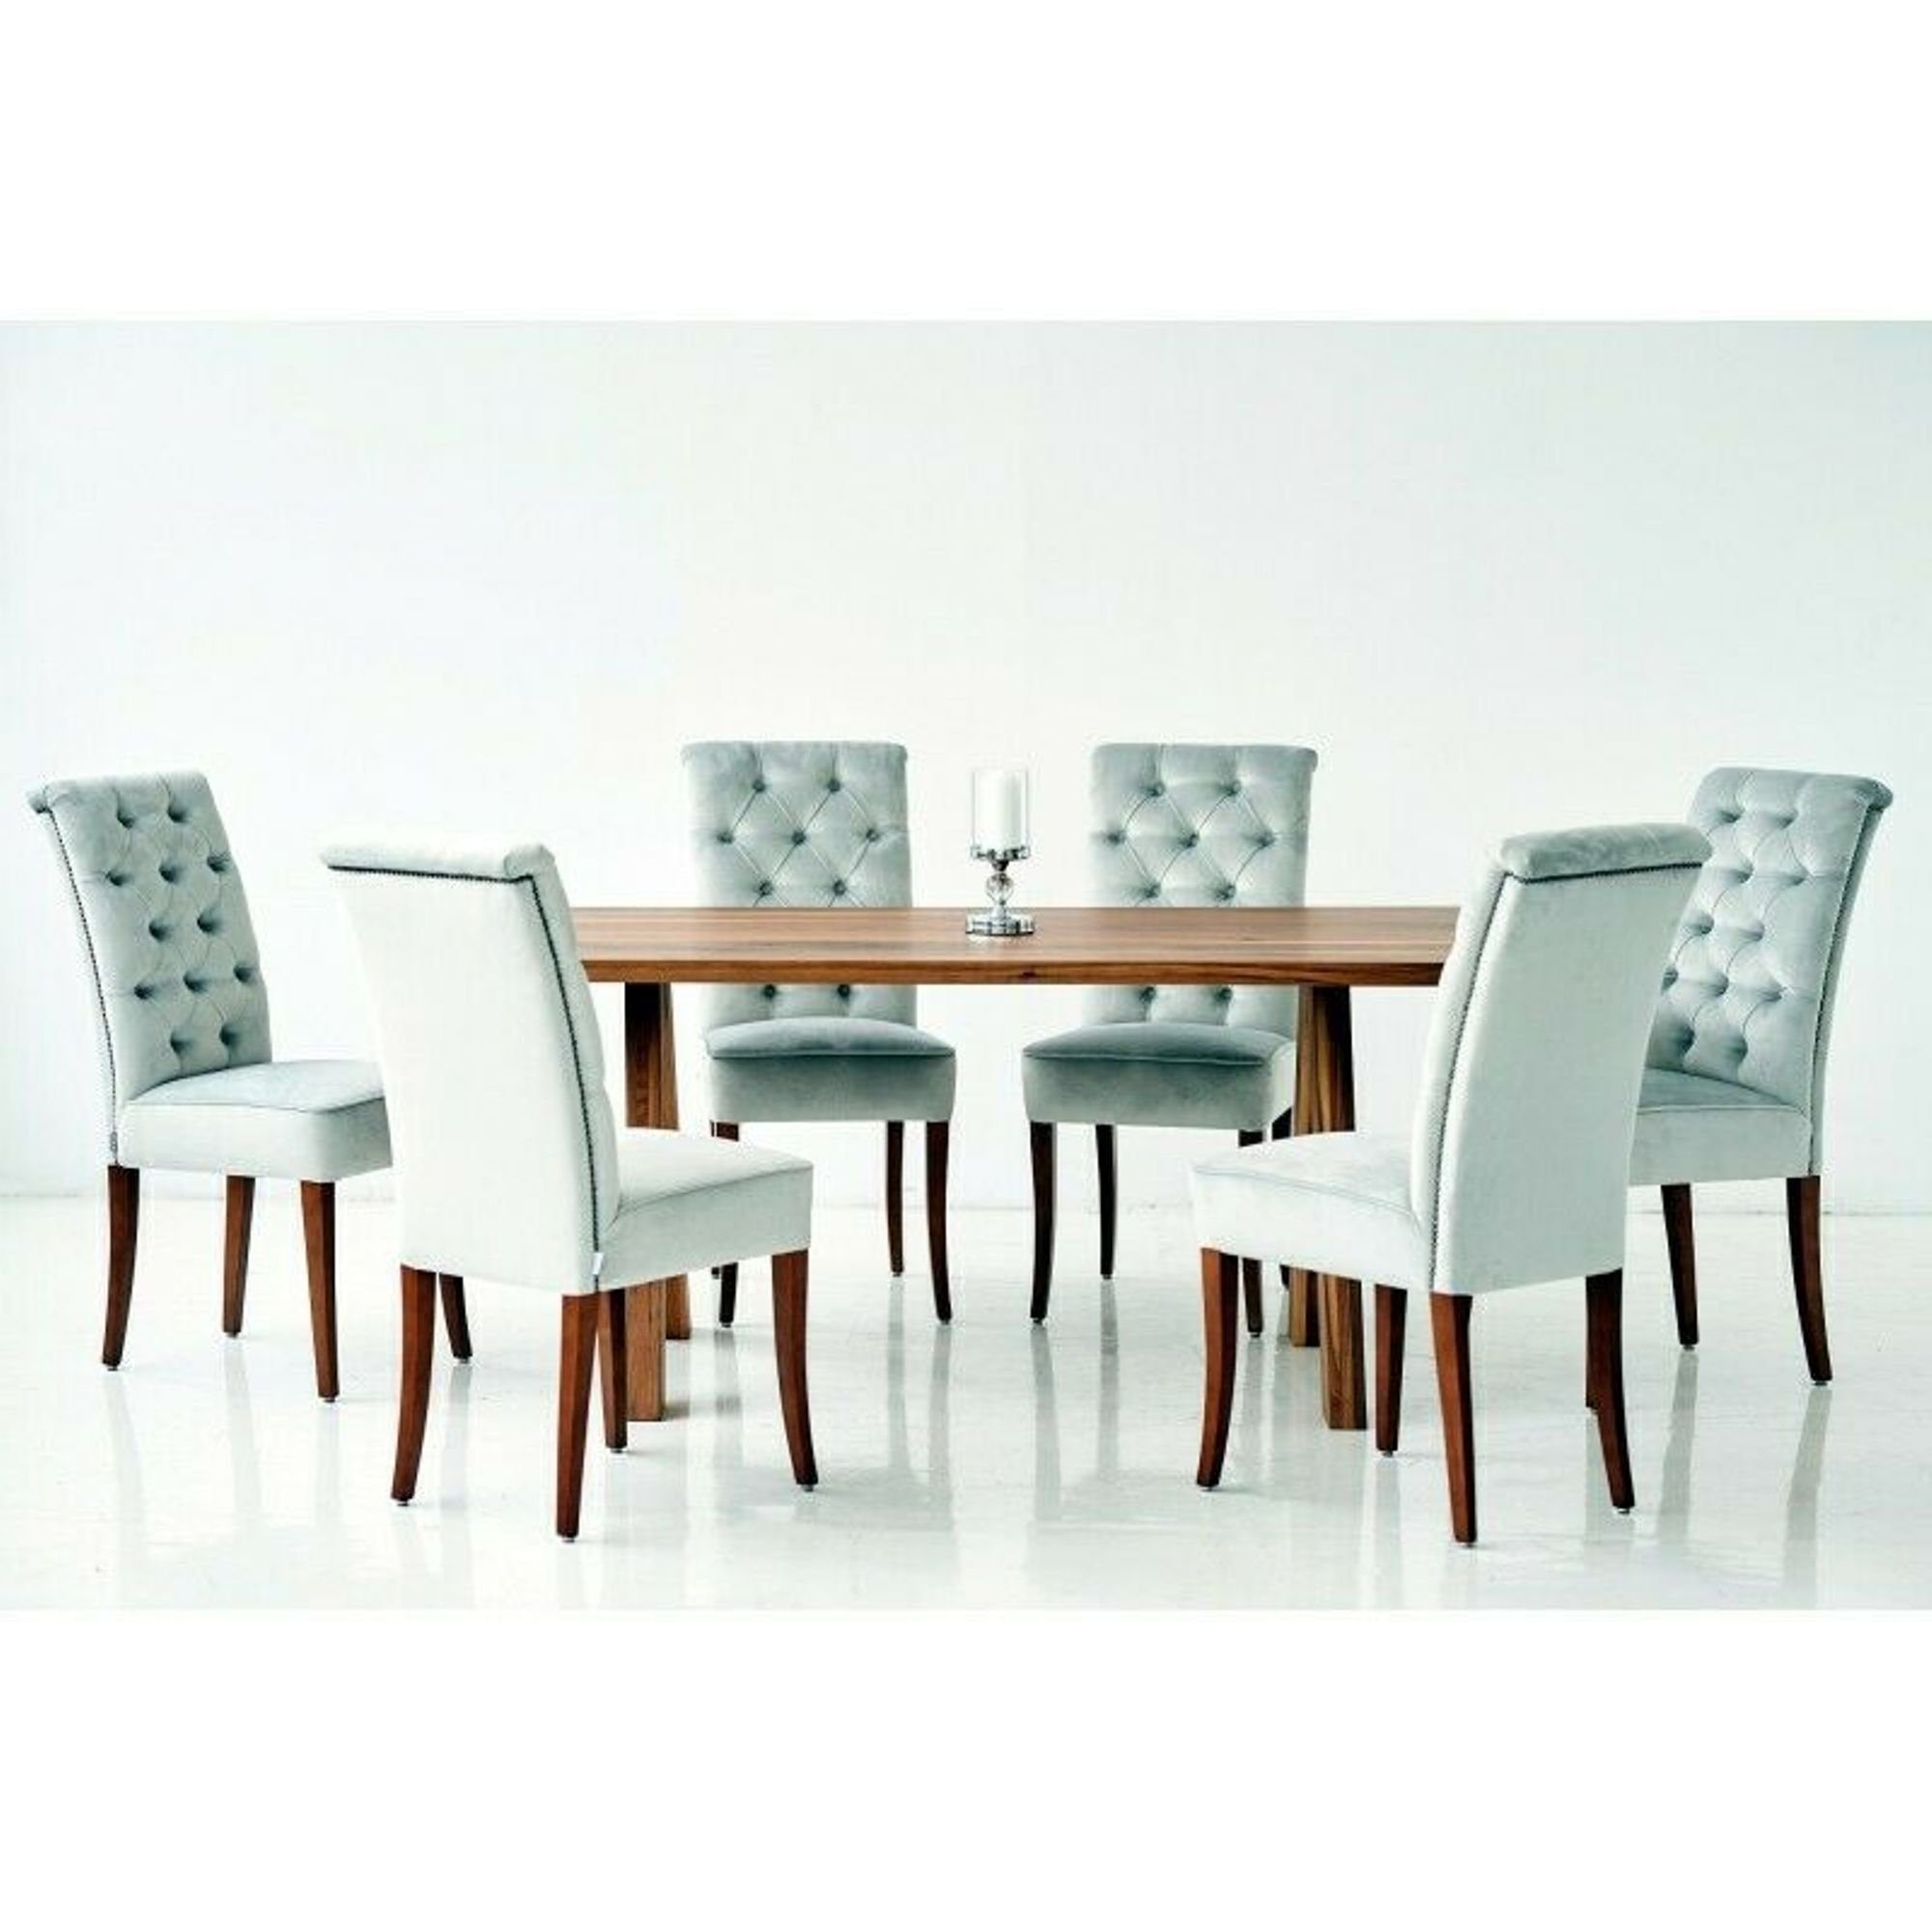 JVmoebel Essgruppe, Design Esszimmer Tisch 4 Lehnstühle Stuhl Chesterfield Sitz Sessel Stühle Gruppe